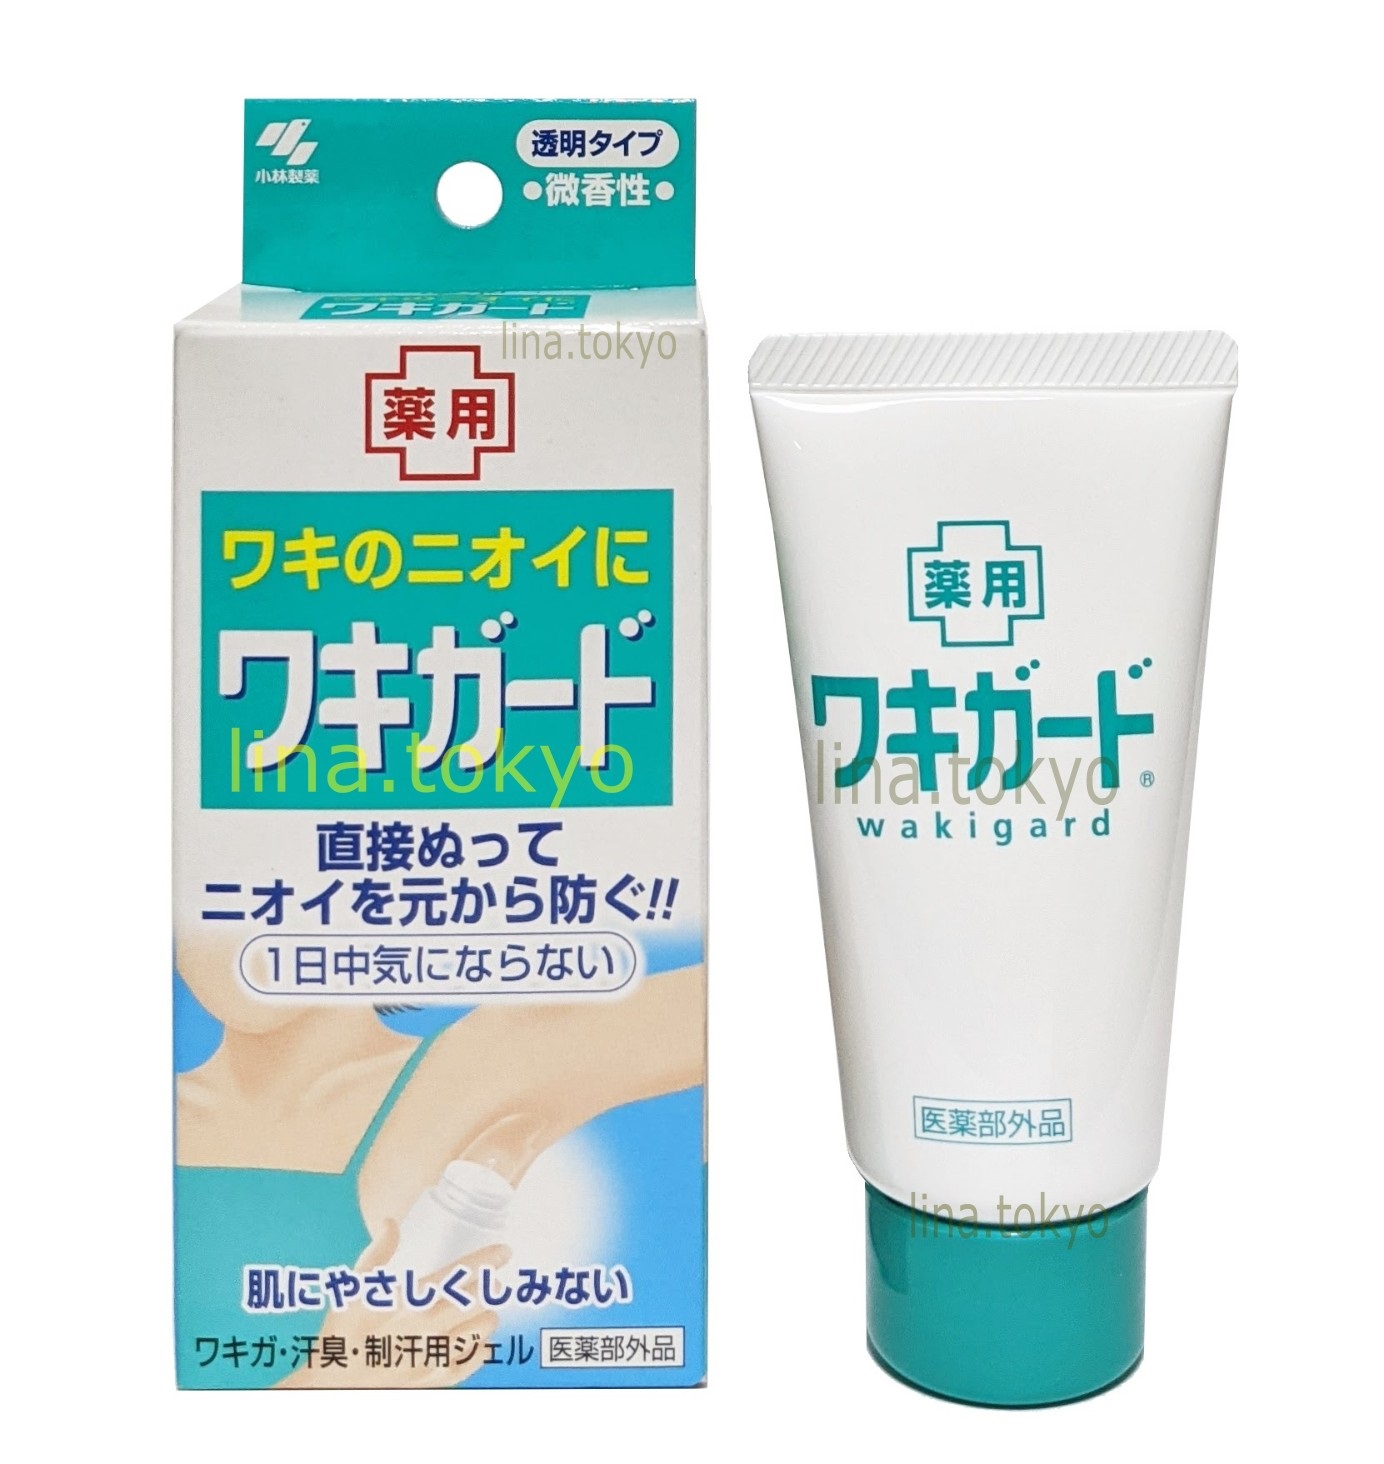 Gel trị hôi nách Nhật Bản Kobayashi Wakigard 50g khử mùi, ngăn mùi hôi, chống mồ hôi ở nách (C1013)(Miễn phi giao hàng)